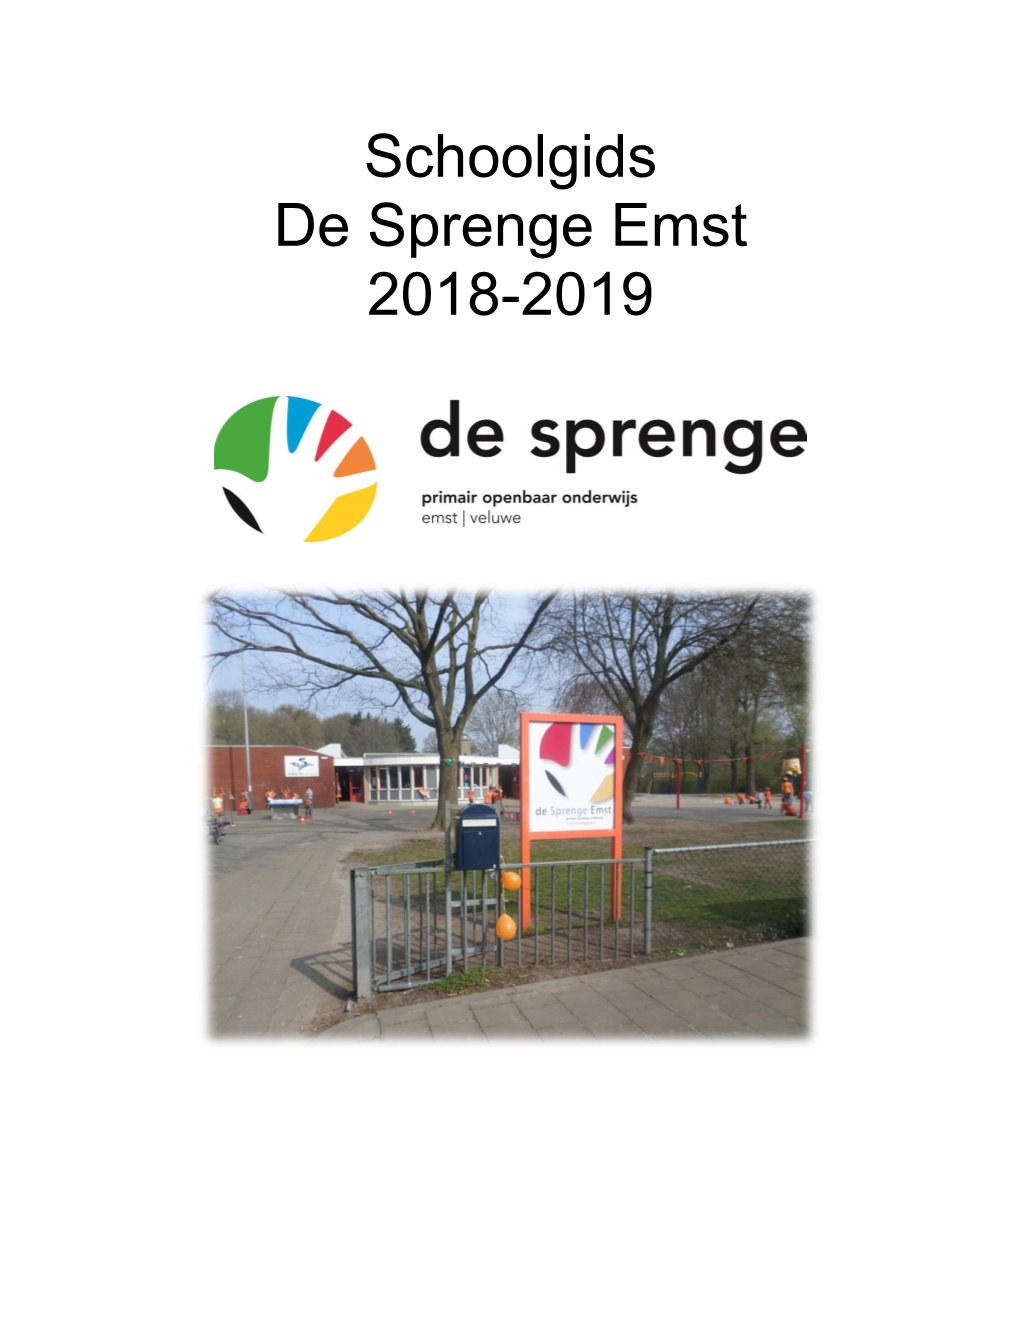 Schoolgids De Sprenge Emst 2018-2019